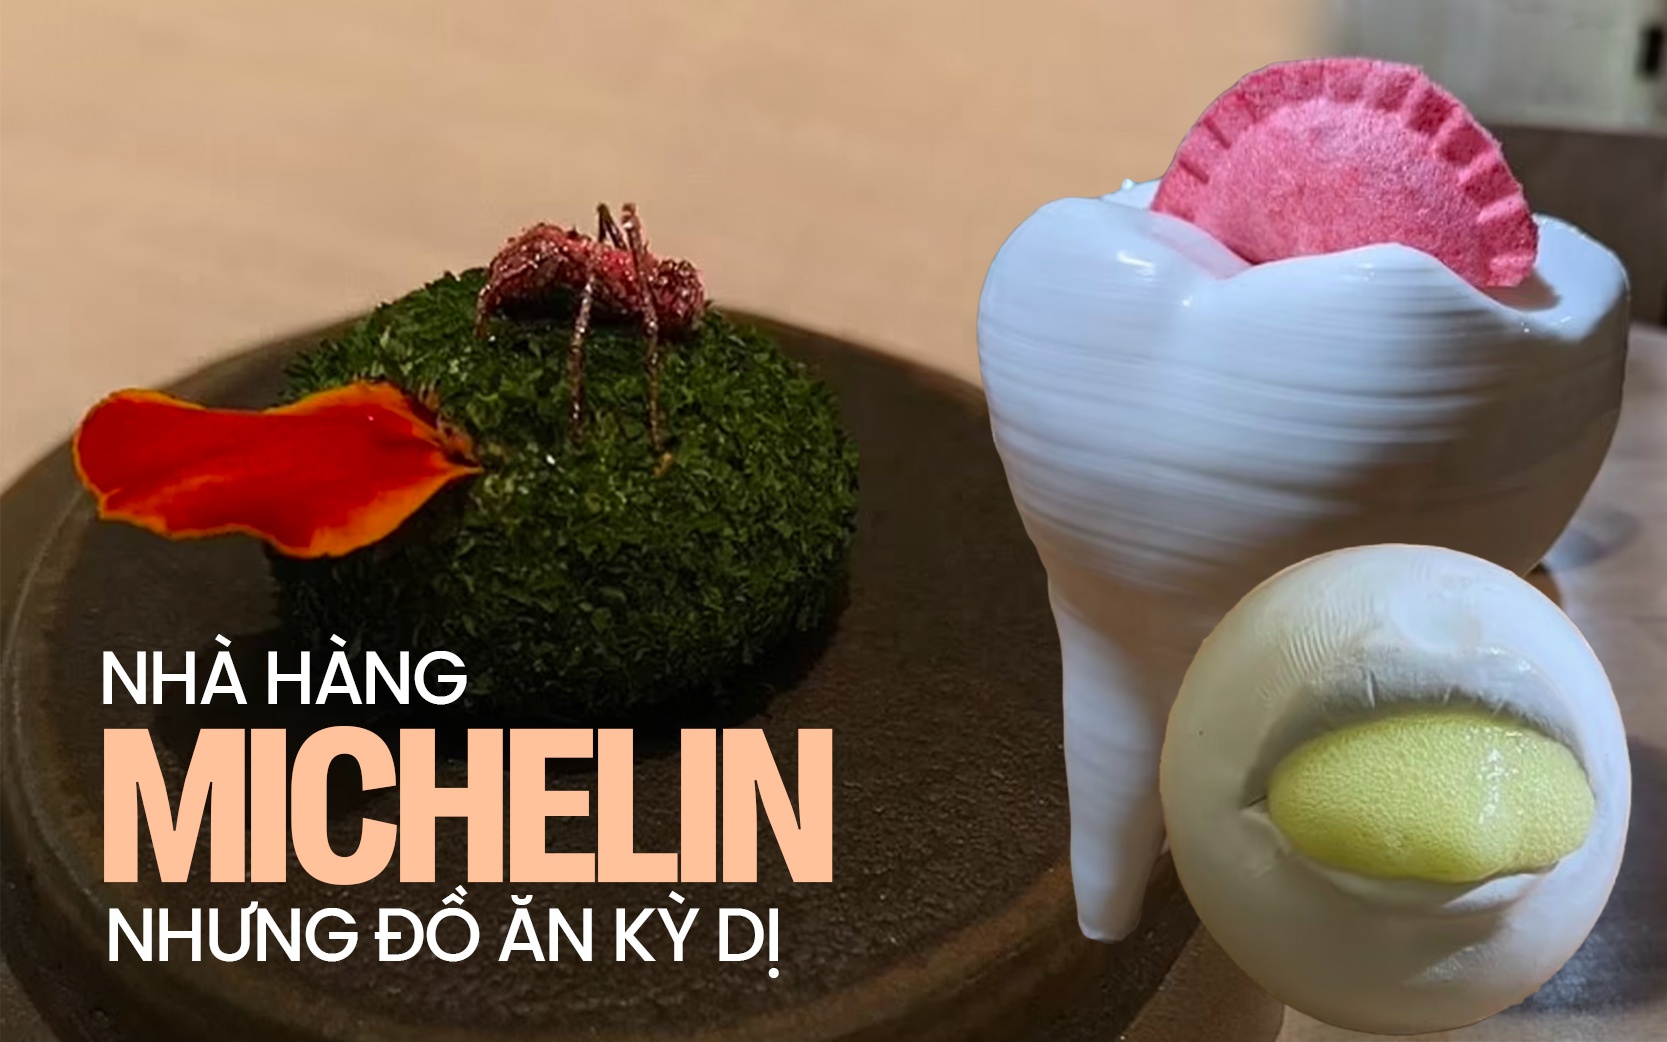 Nhà hàng gắn sao Michelin nhưng đồ ăn kỳ cục, phục vụ từ “nấm mốc” đến “thịt kiến”